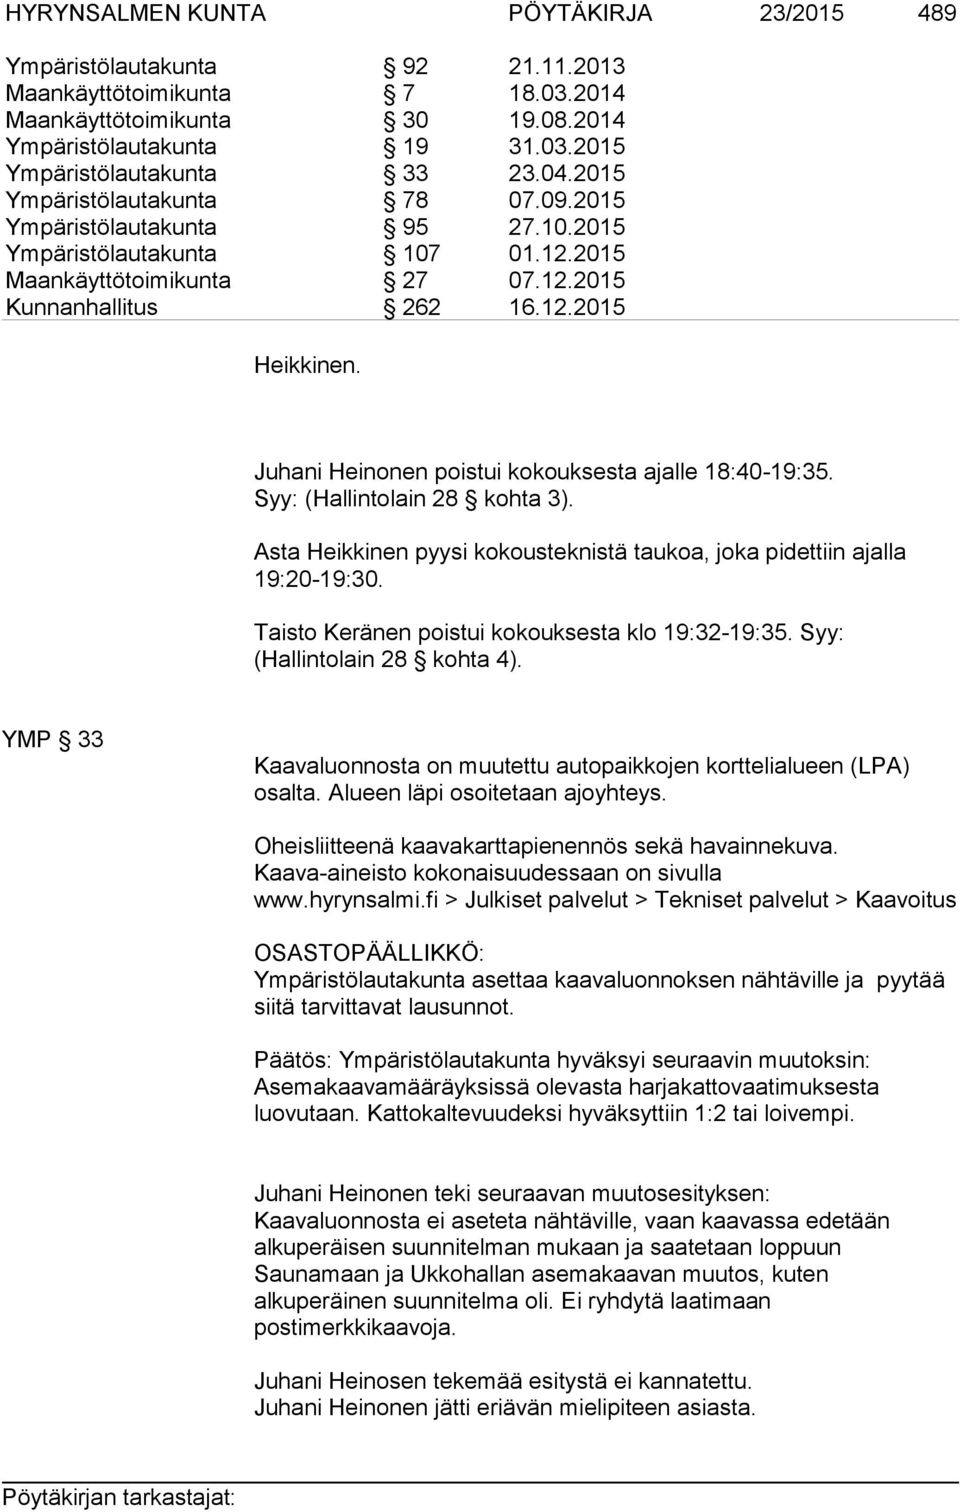 Juhani Heinonen poistui kokouksesta ajalle 18:40-19:35. Syy: (Hallintolain 28 kohta 3). Asta Heikkinen pyysi kokousteknistä taukoa, joka pidettiin ajalla 19:20-19:30.